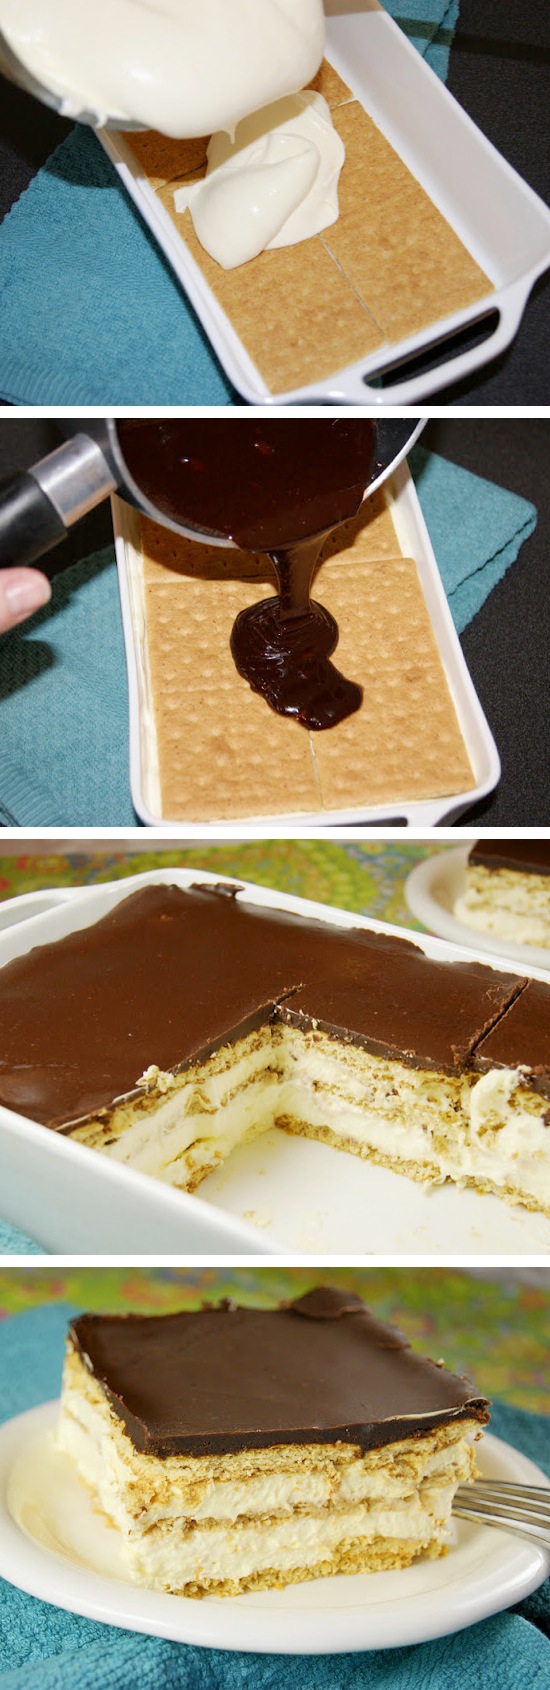 No Bake Chocolate Eclair Dessert Recipe